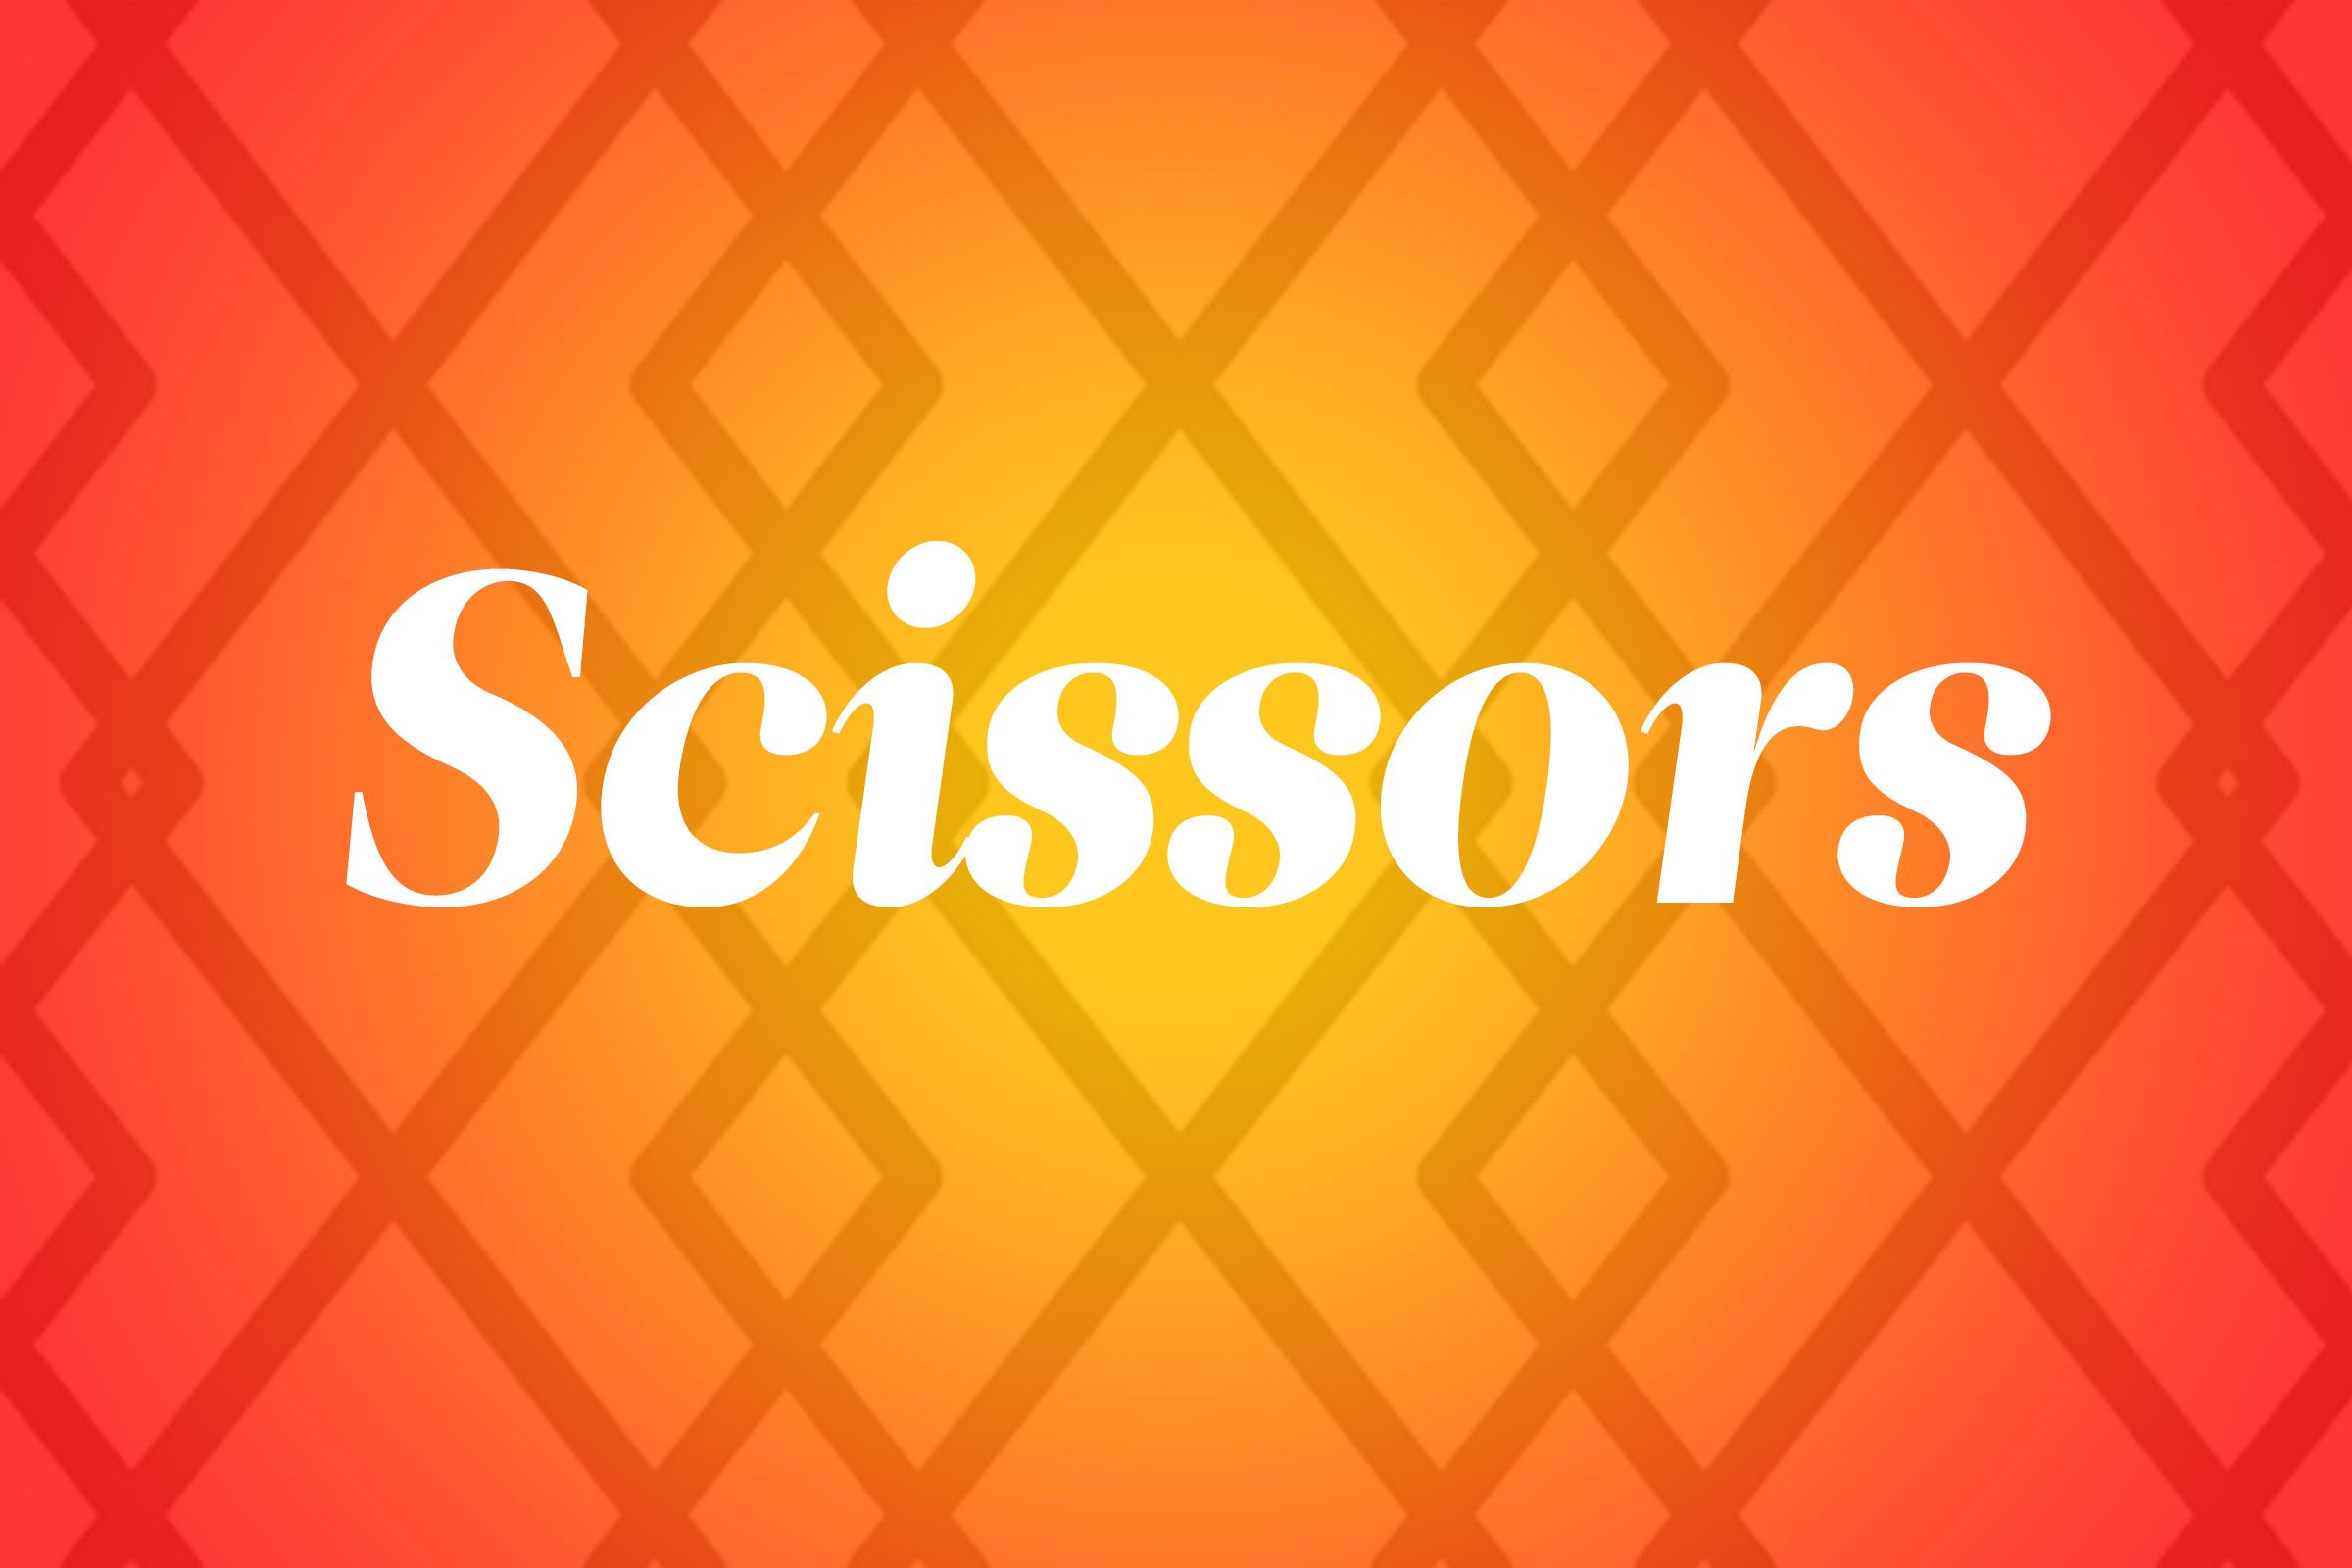 scissors pronunciation